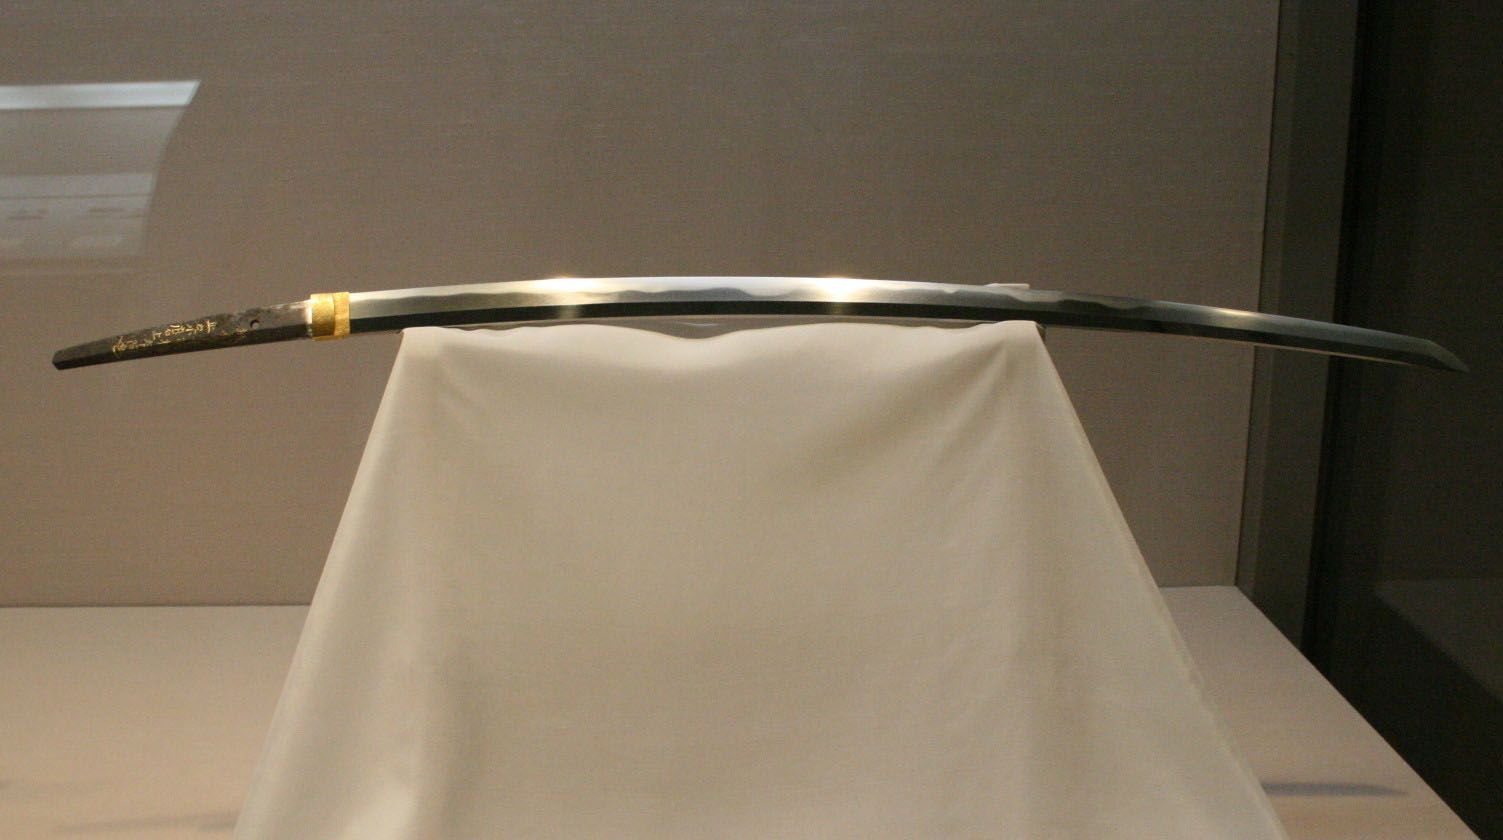 famous ancient samurai swords